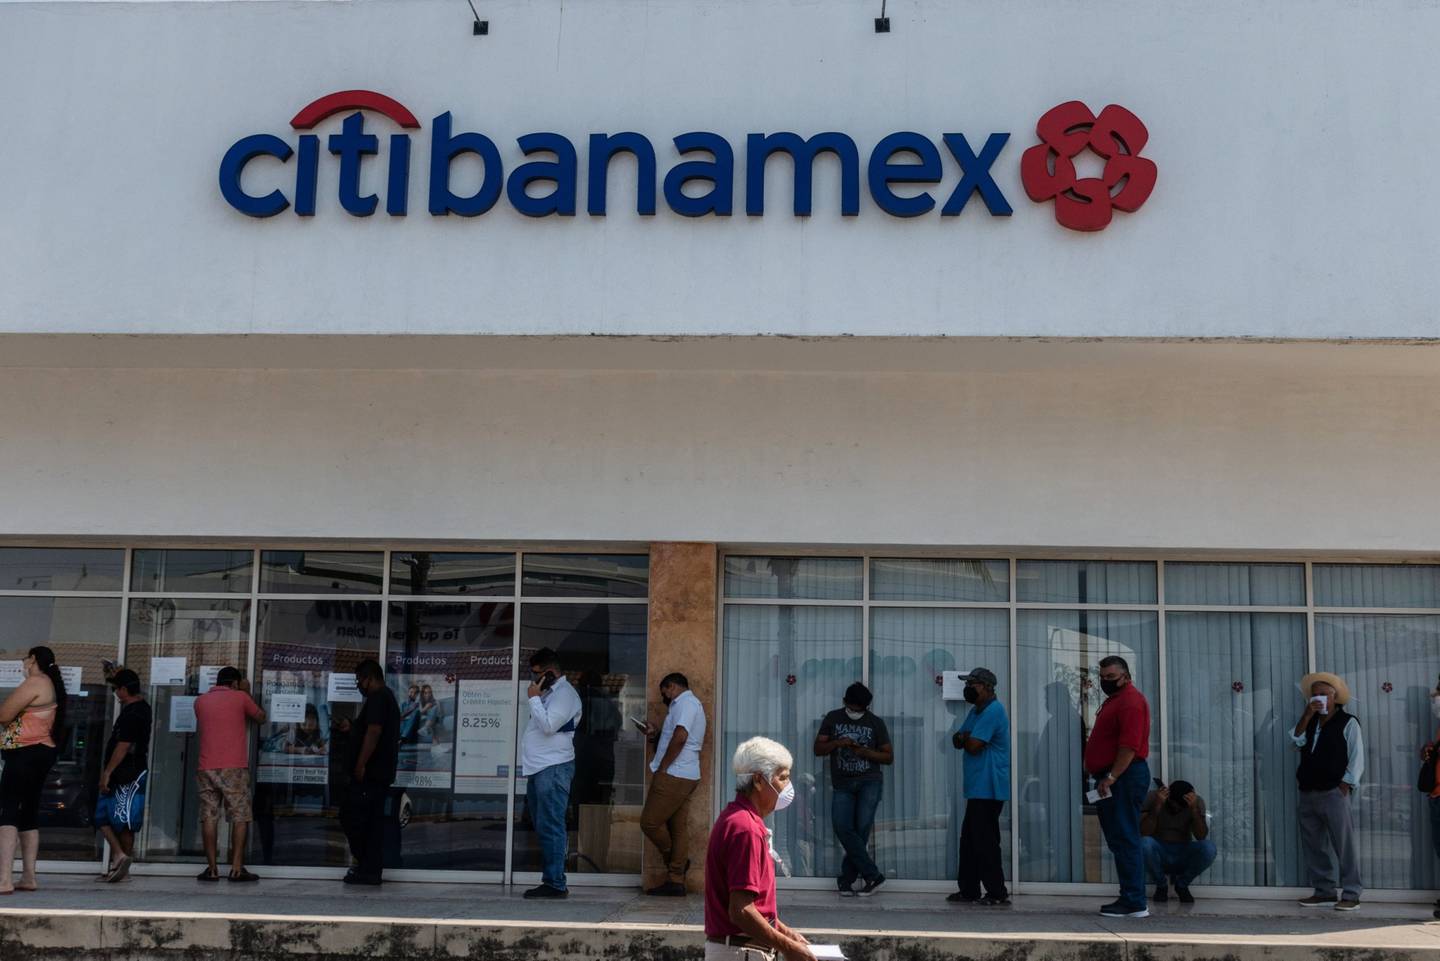 Melhores candidatos para adquirir o Citibanamex podem ser os maiores bancos mexicanos